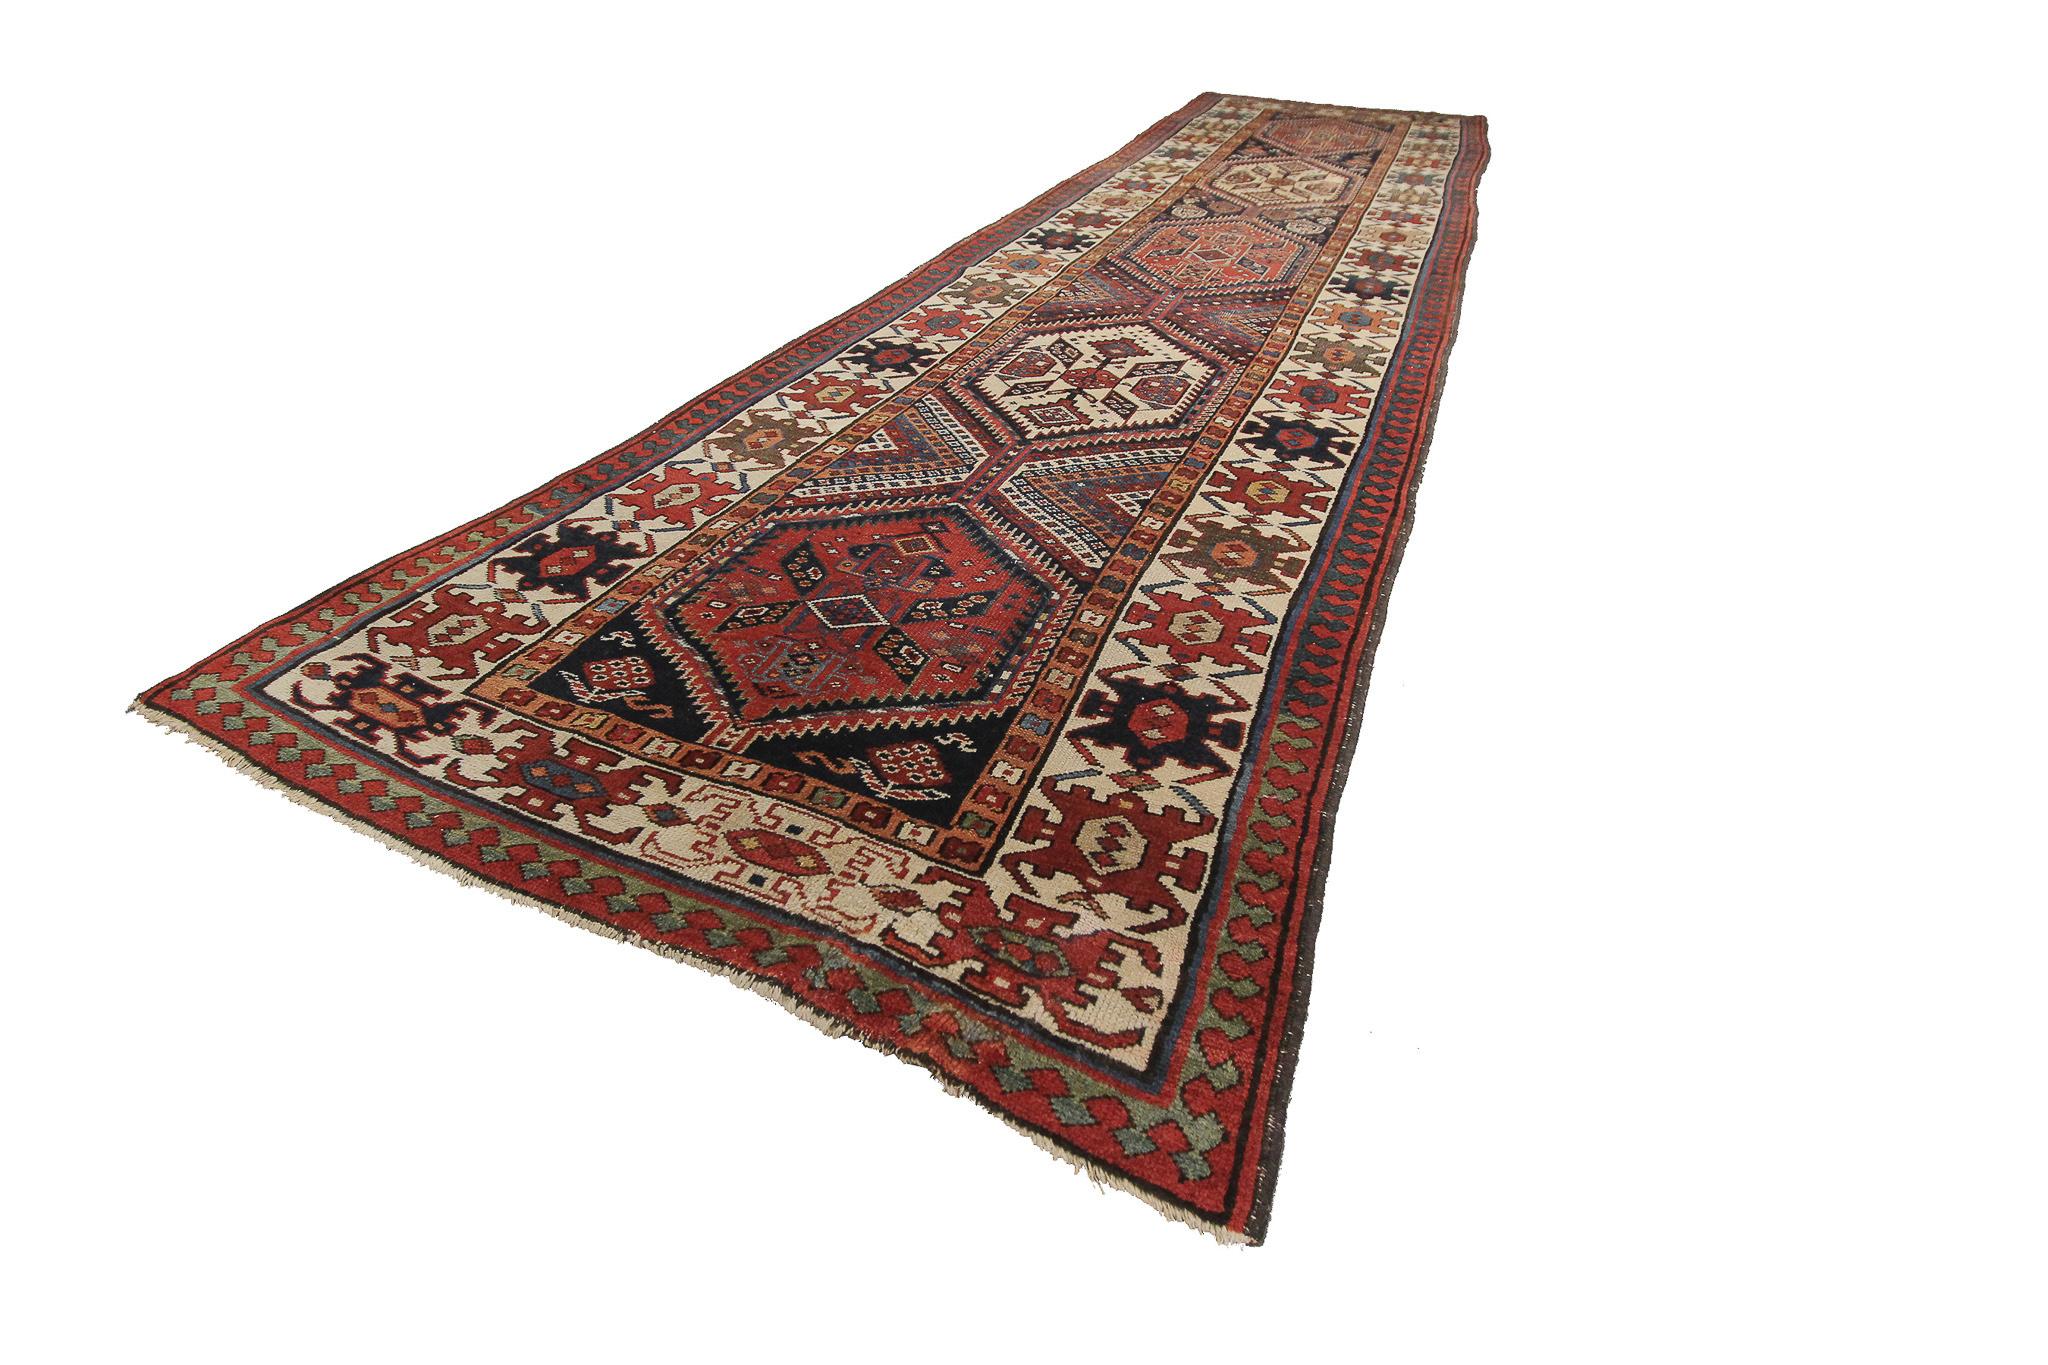 Seltener Antiker Teppich Kaukasischer Kazak Feiner Läufer Boho Teppich
Maße: 3'8